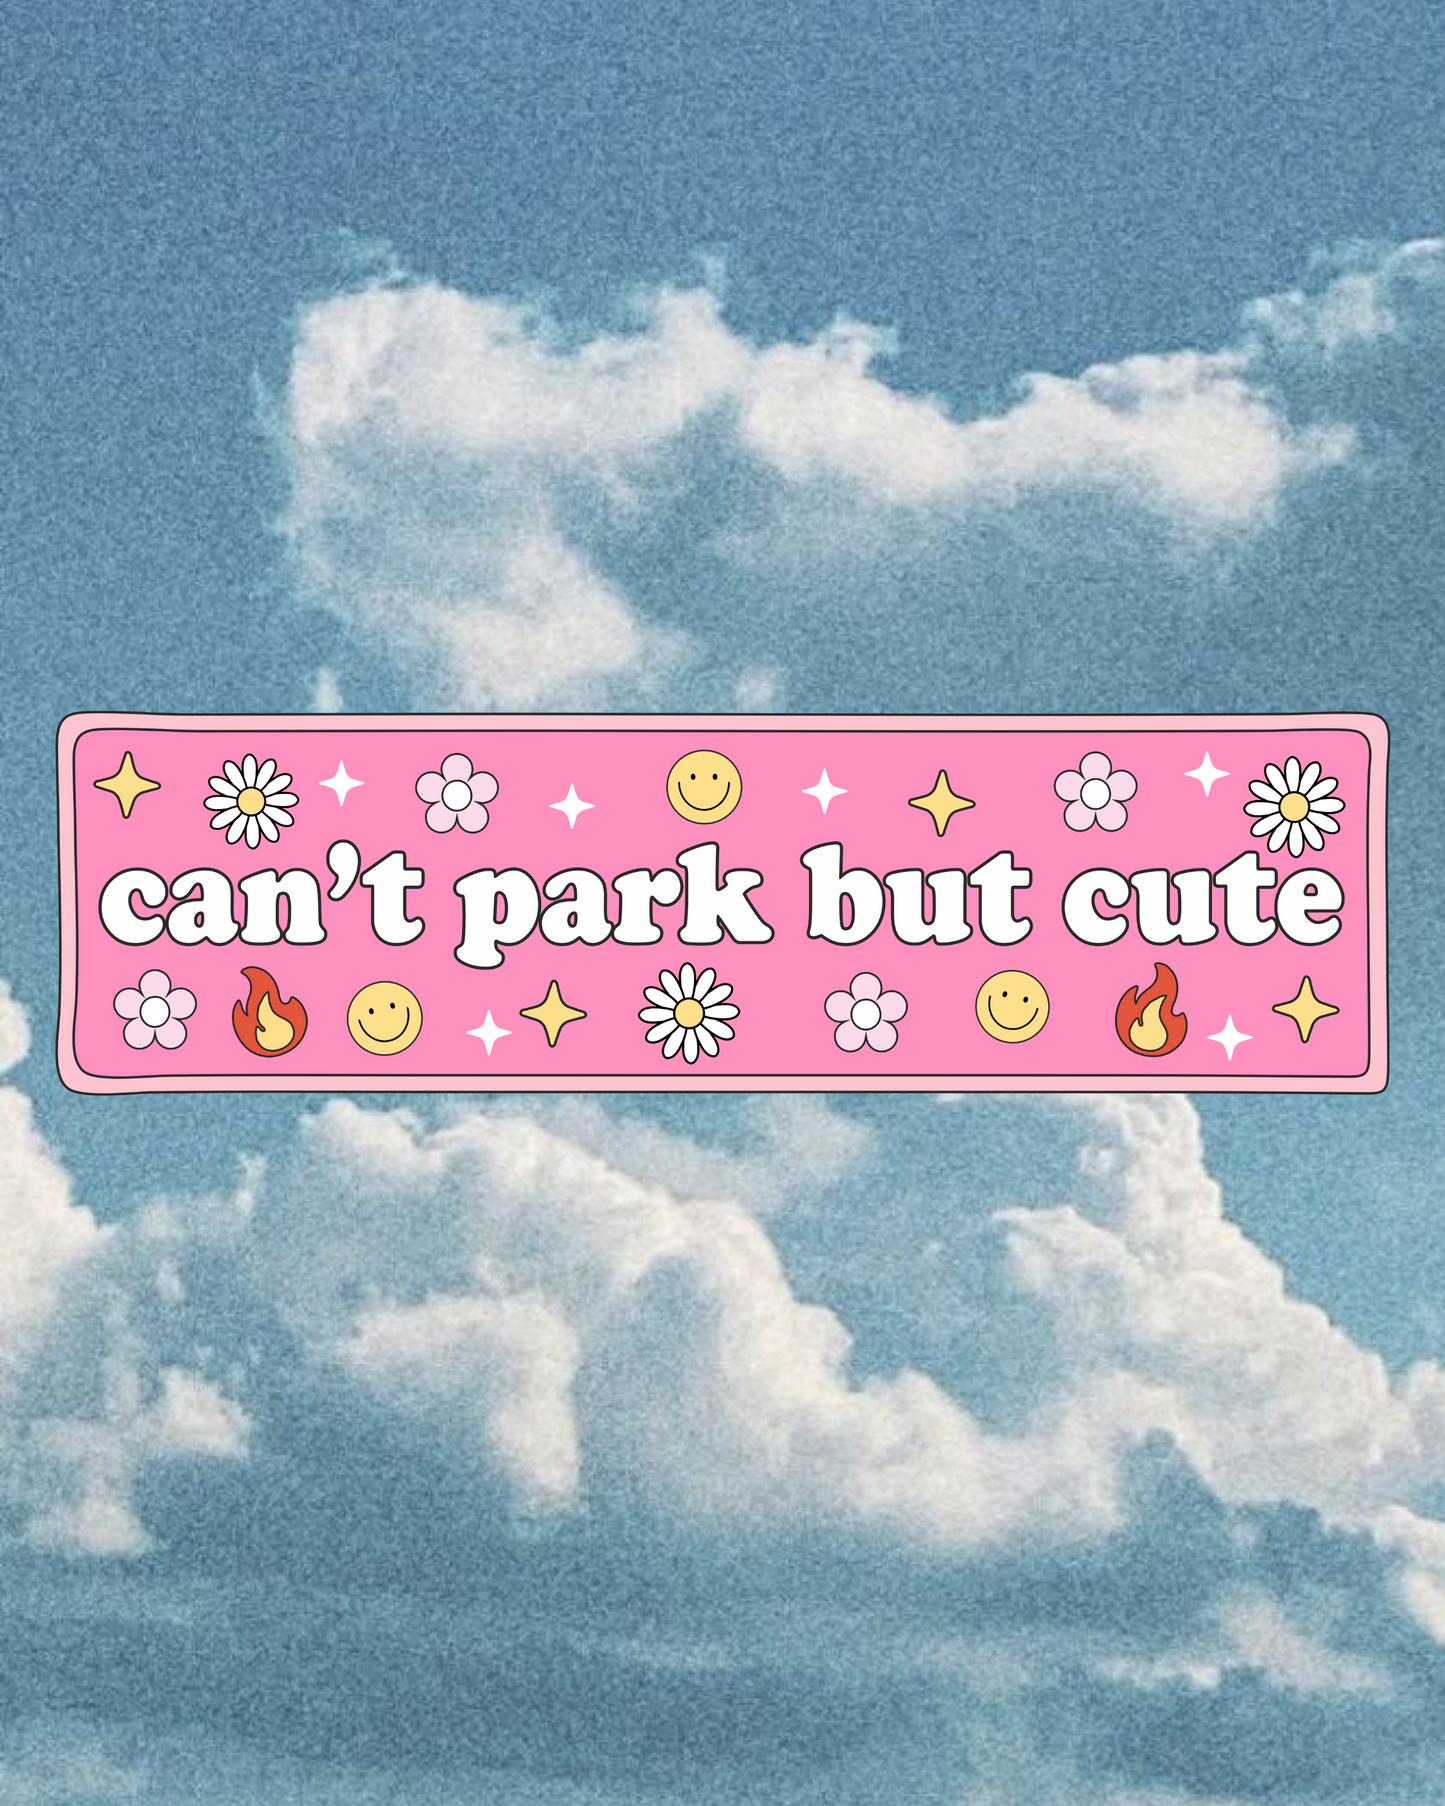 Cant park but cute - Bumper Sticker